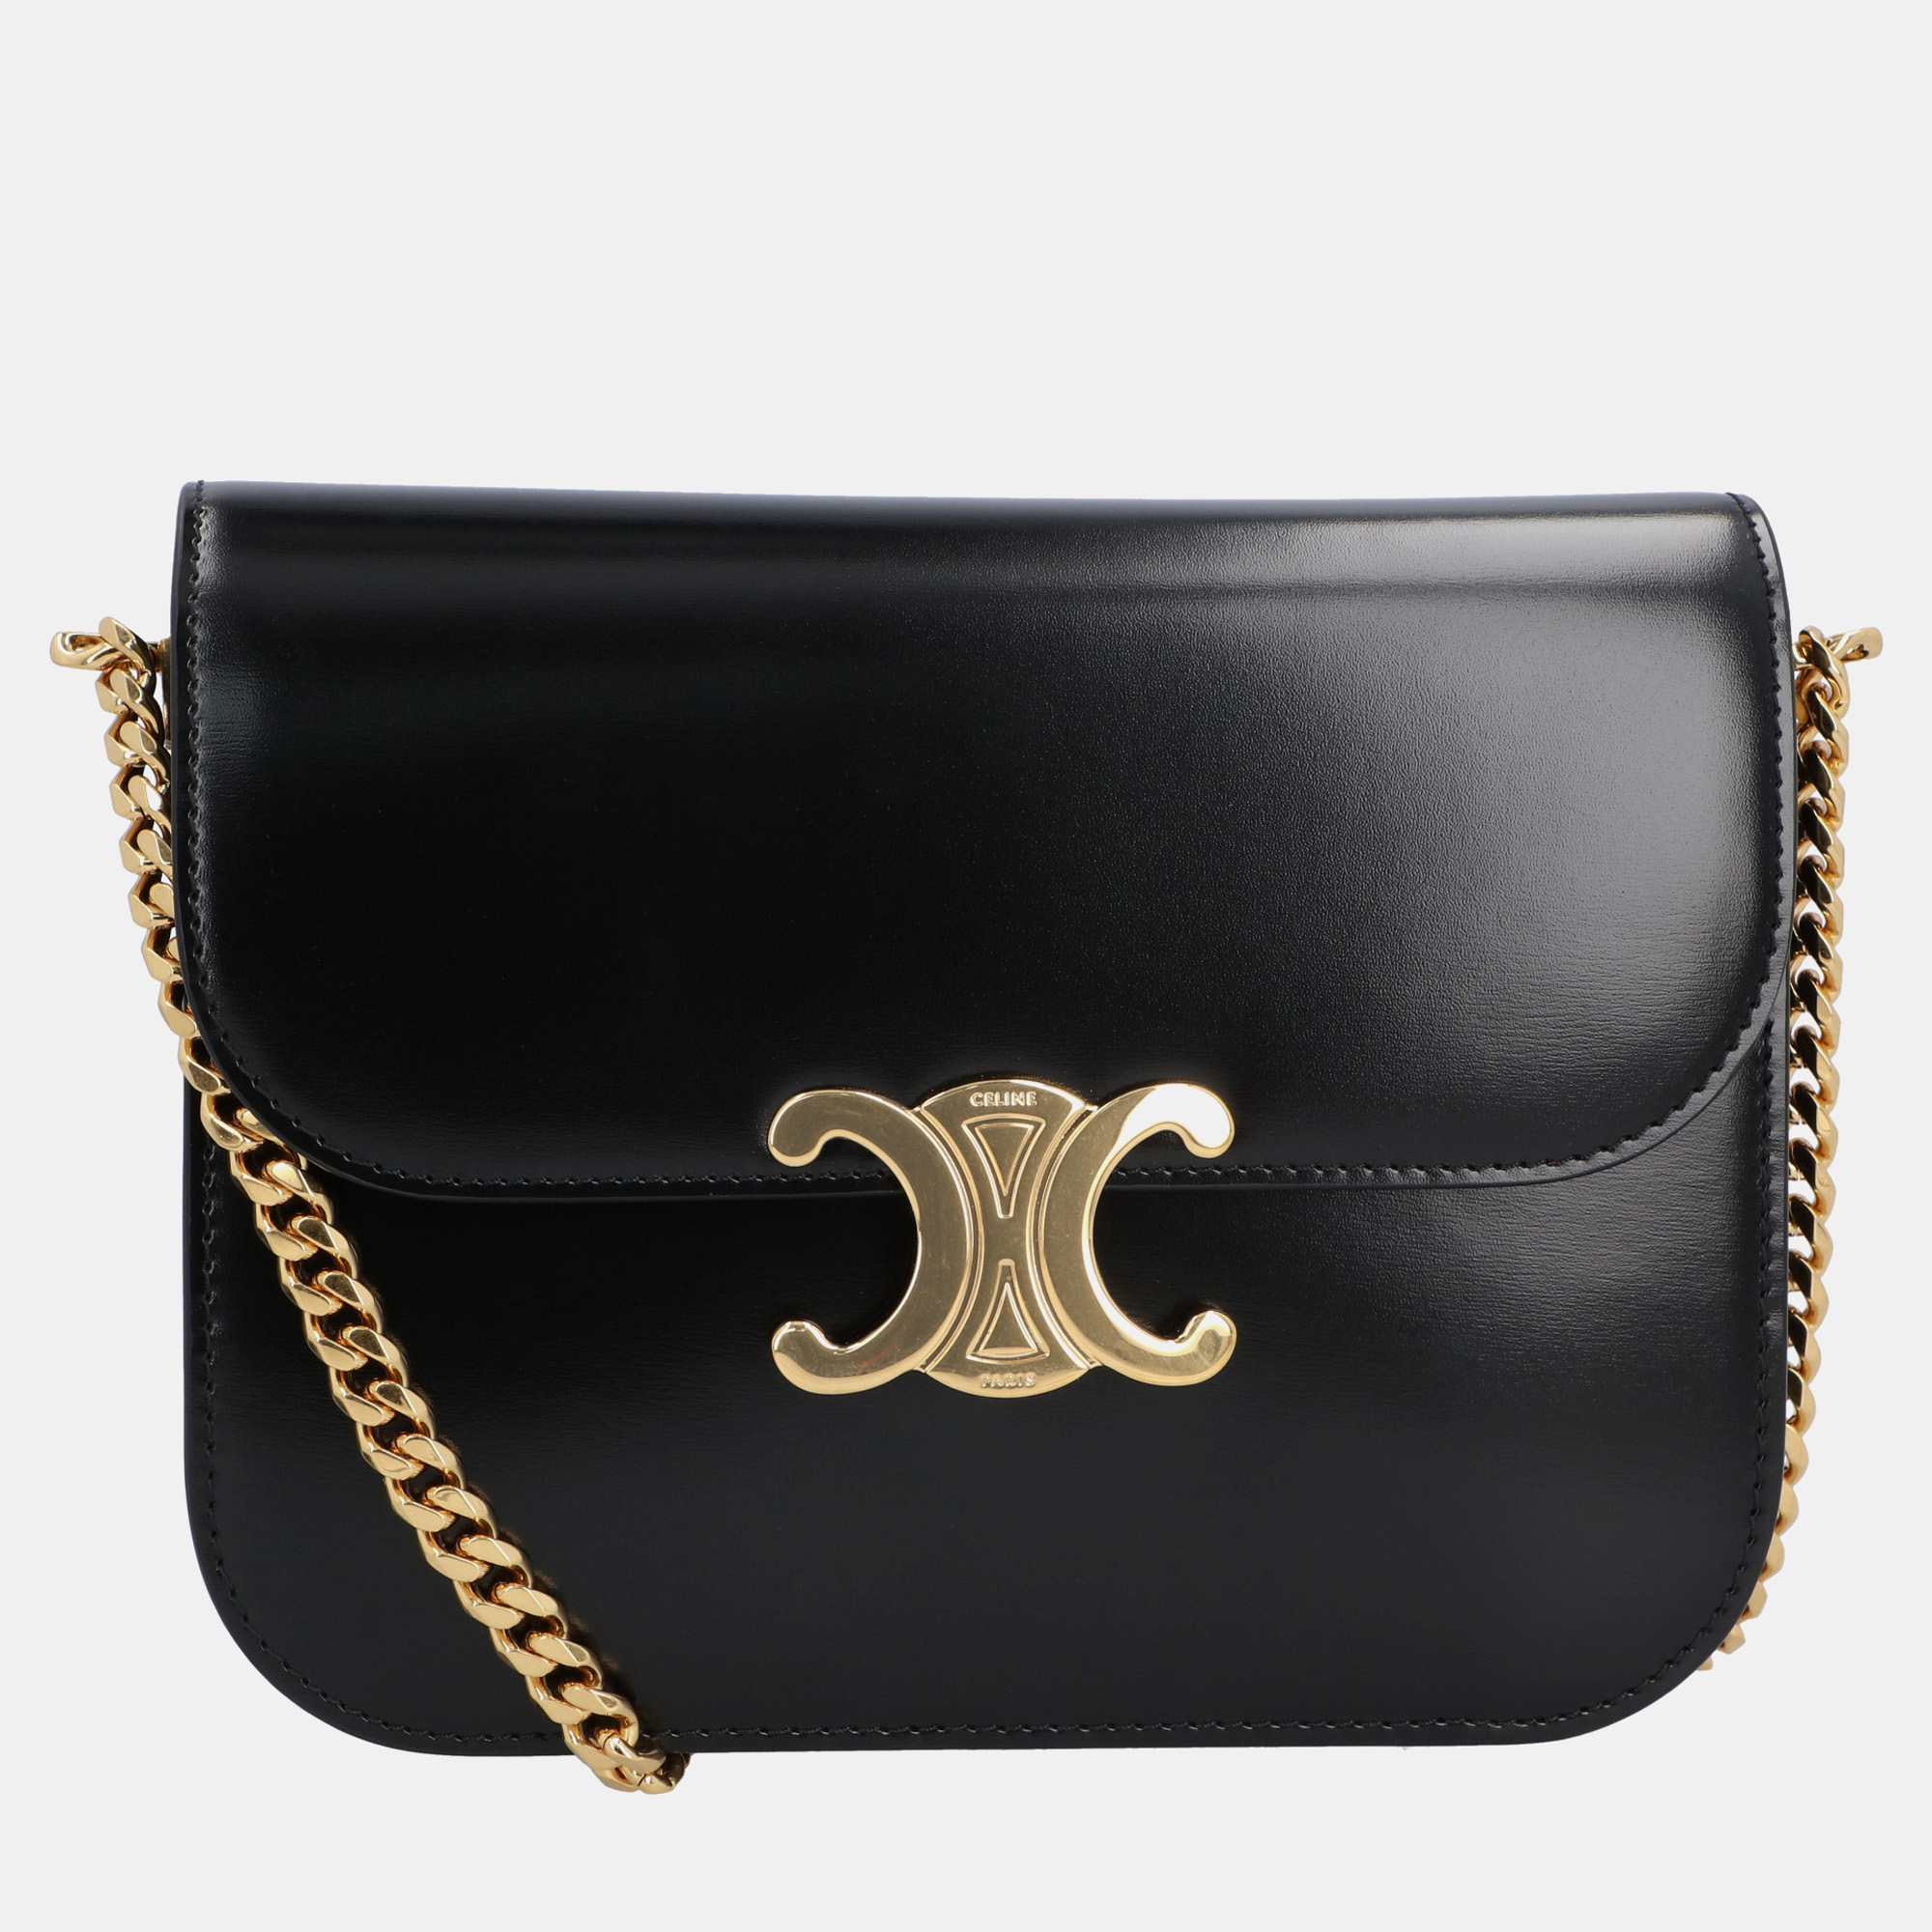 Celine black leather triomphe shoulder bag